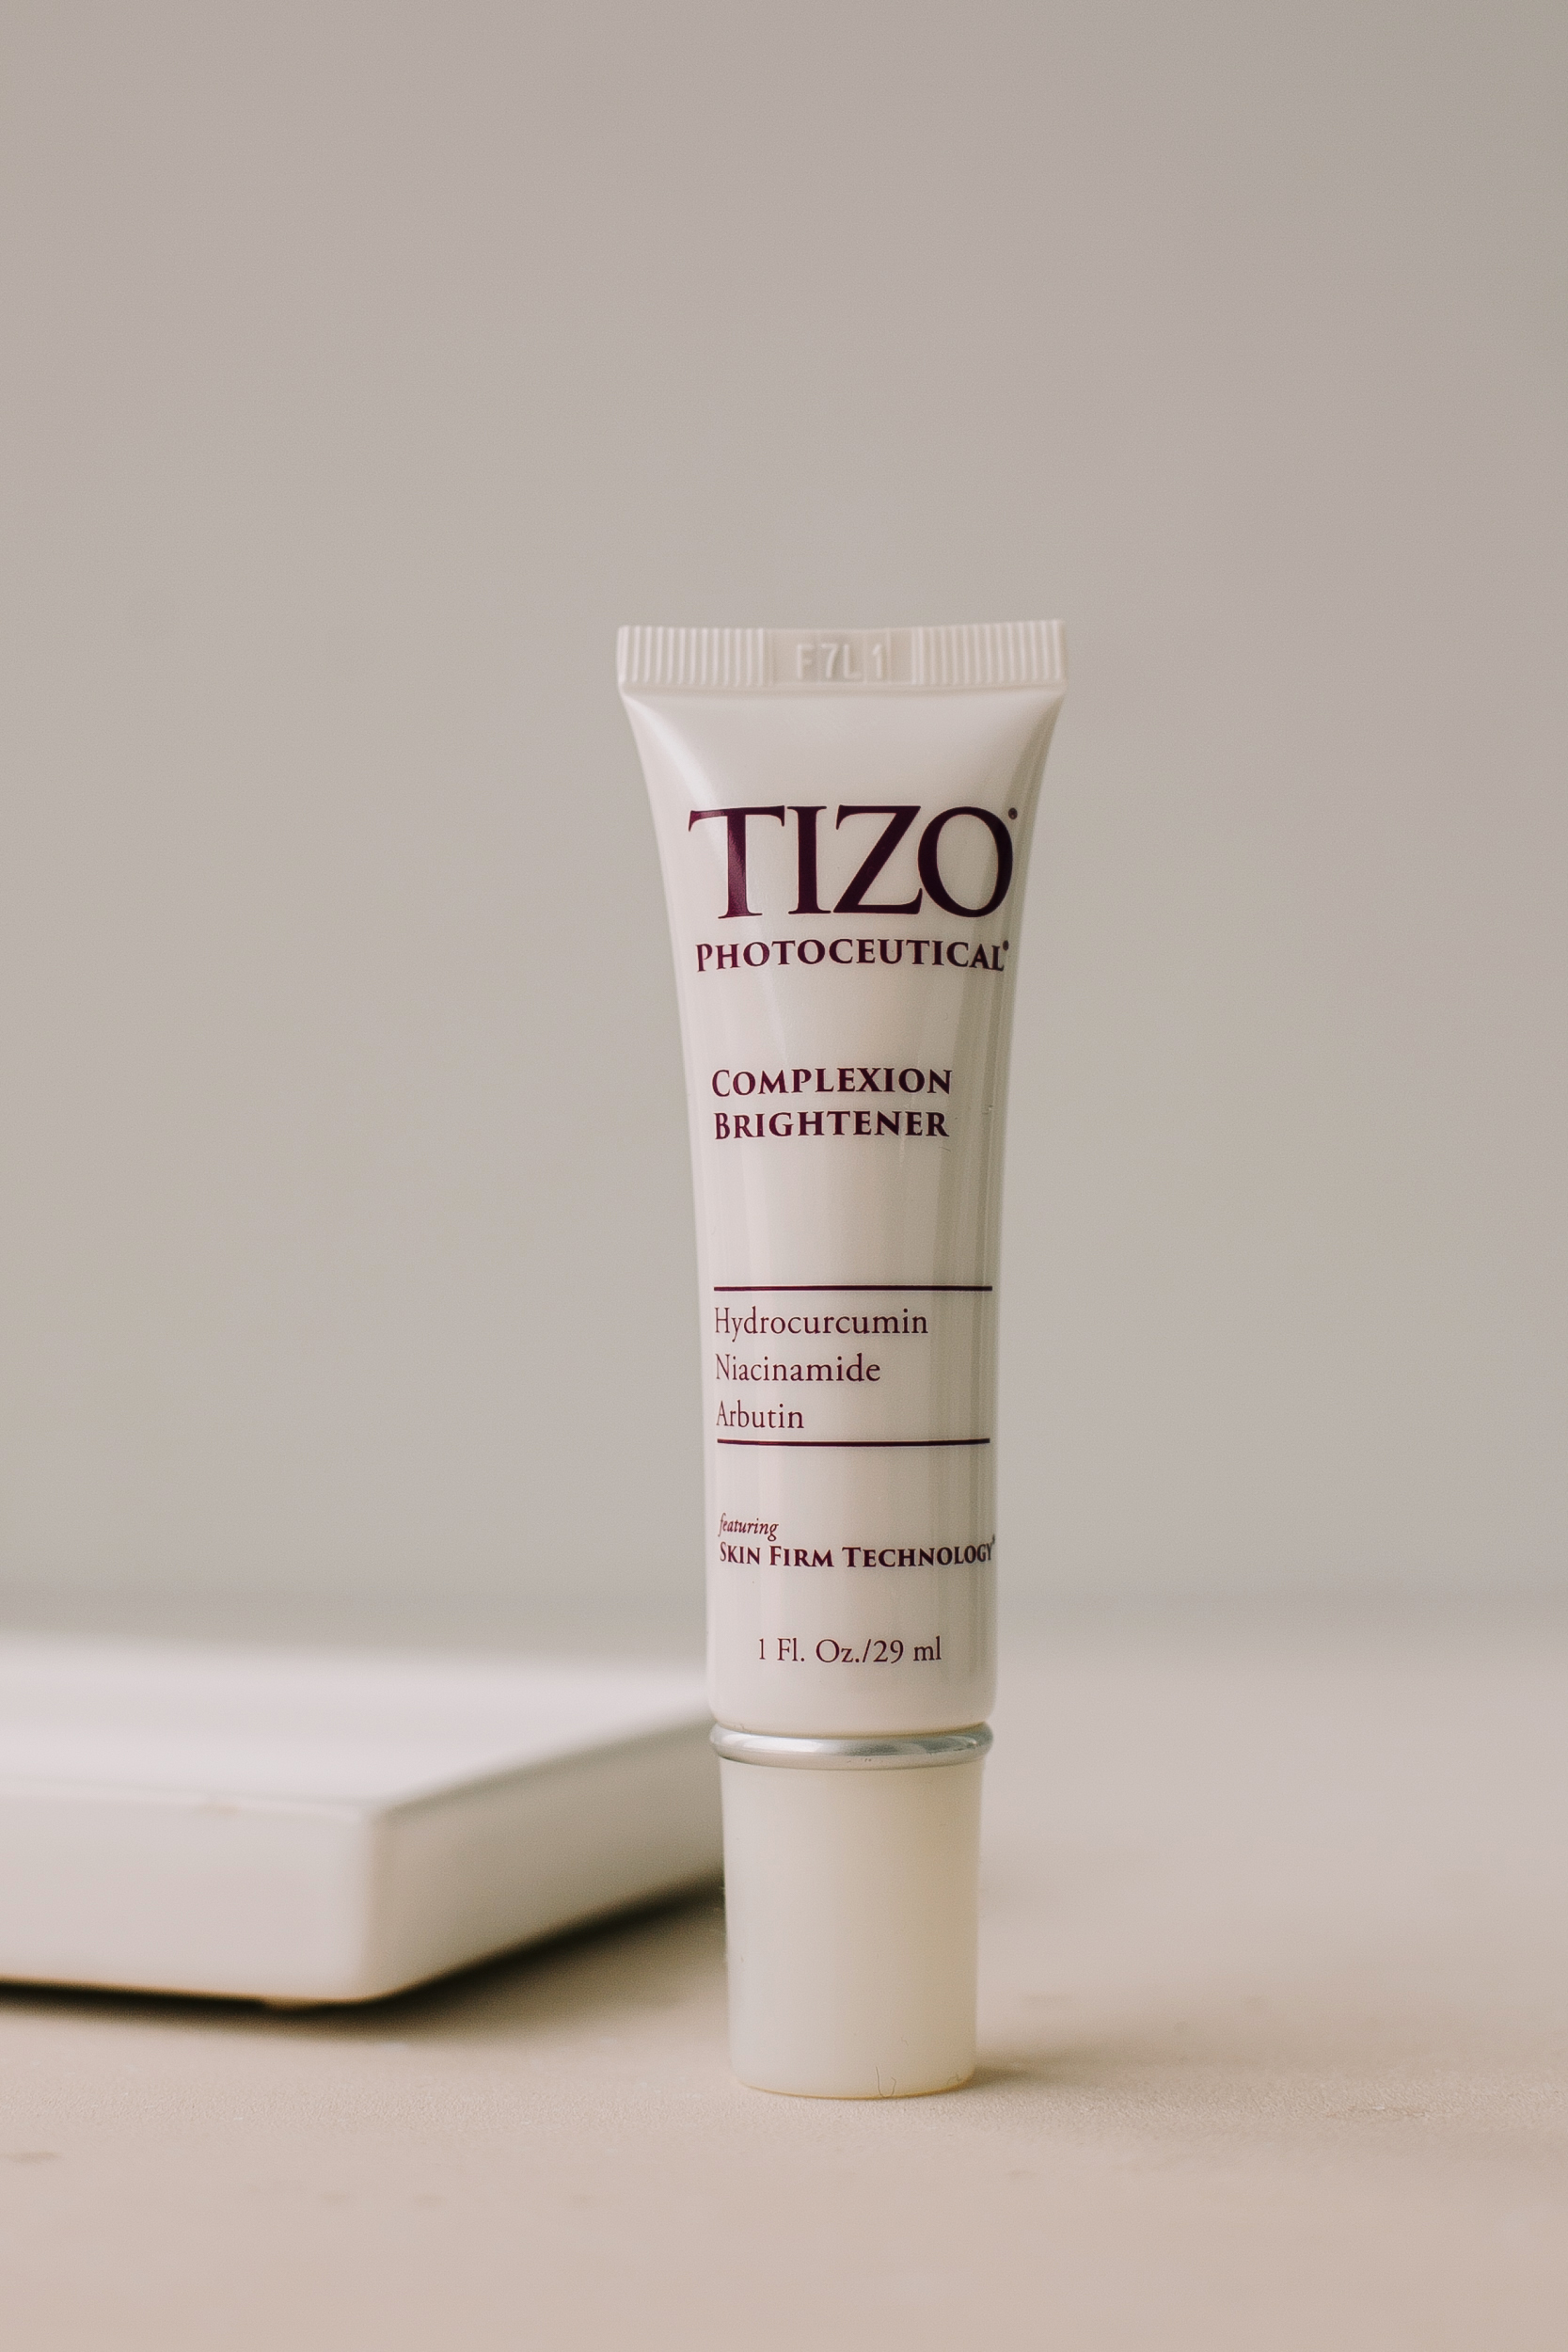 Увлажняющий крем, выравнивающий цвет лица TiZO Photoceutical Complexion Brightener 29ml